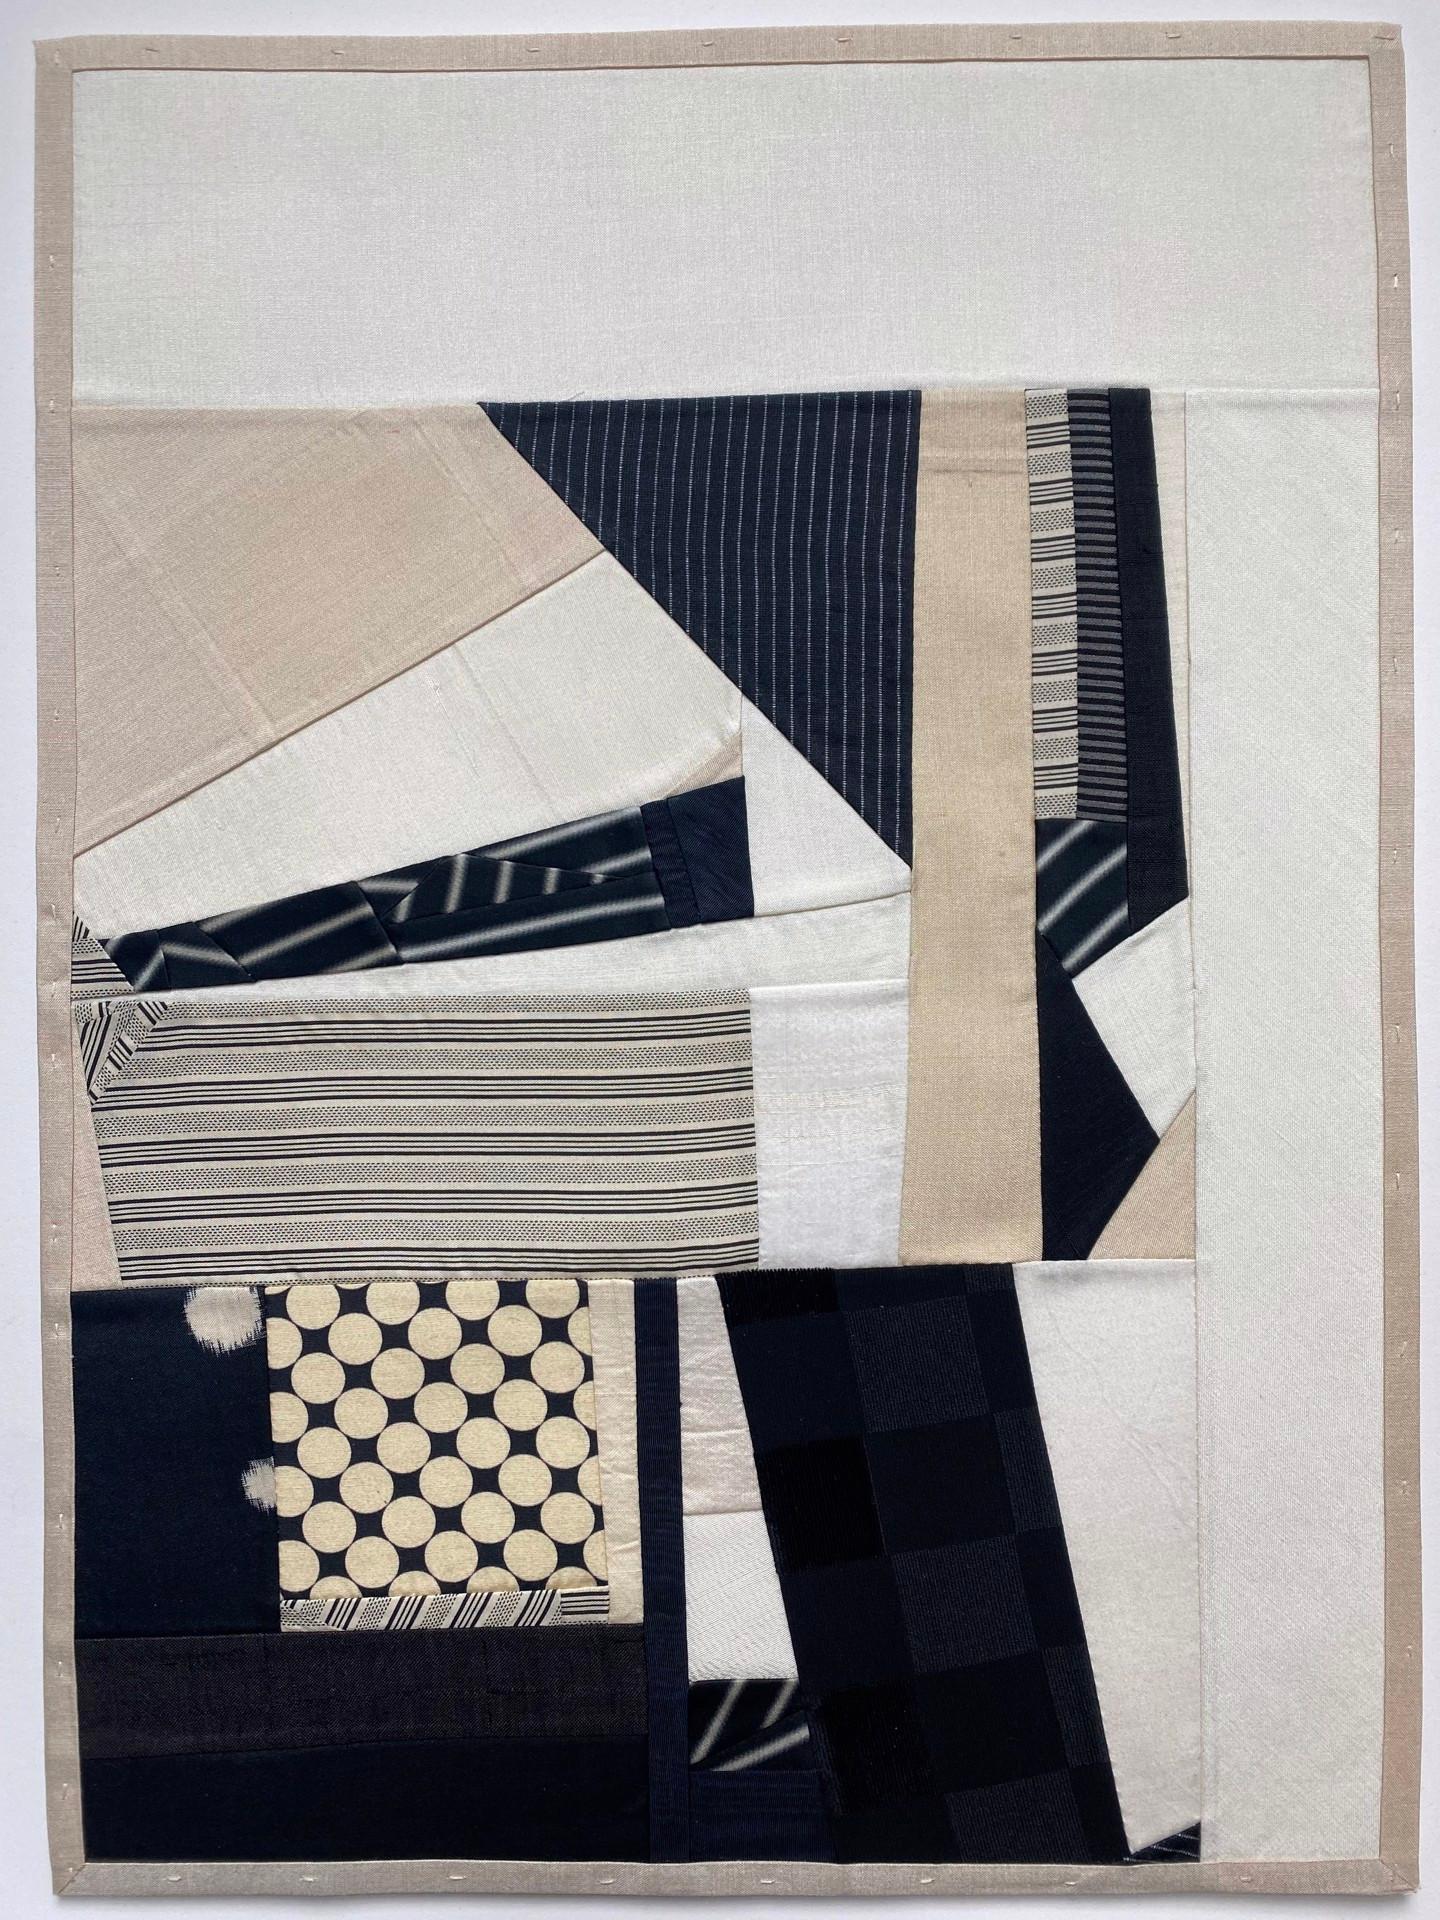 Die Stoffcollagen von Debra Smith sind wie Ausschnitte aus zeitgenössischen Quilts. Sie recycelt Stoffe, wie z. B. das Seidenfutter antiker japanischer Kimonos, aus denen sie einen Großteil ihrer aktuellen Arbeiten fertigt. Die Seidenstoffe sind in